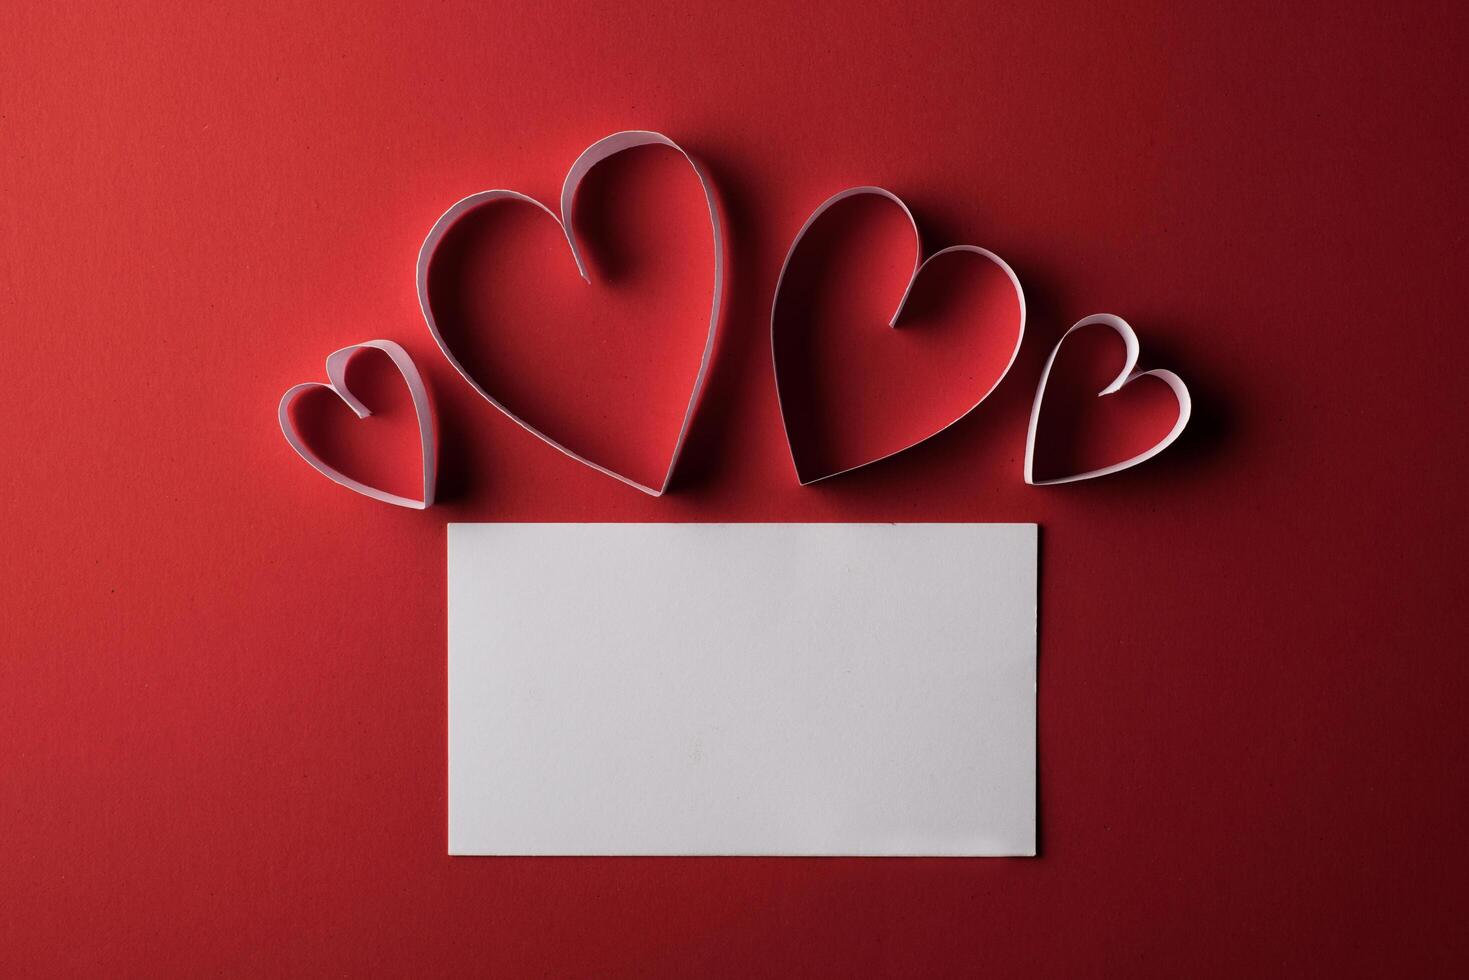 rotes Herzpapier und leer mit Anmerkungskarte auf rotem Hintergrund. foto